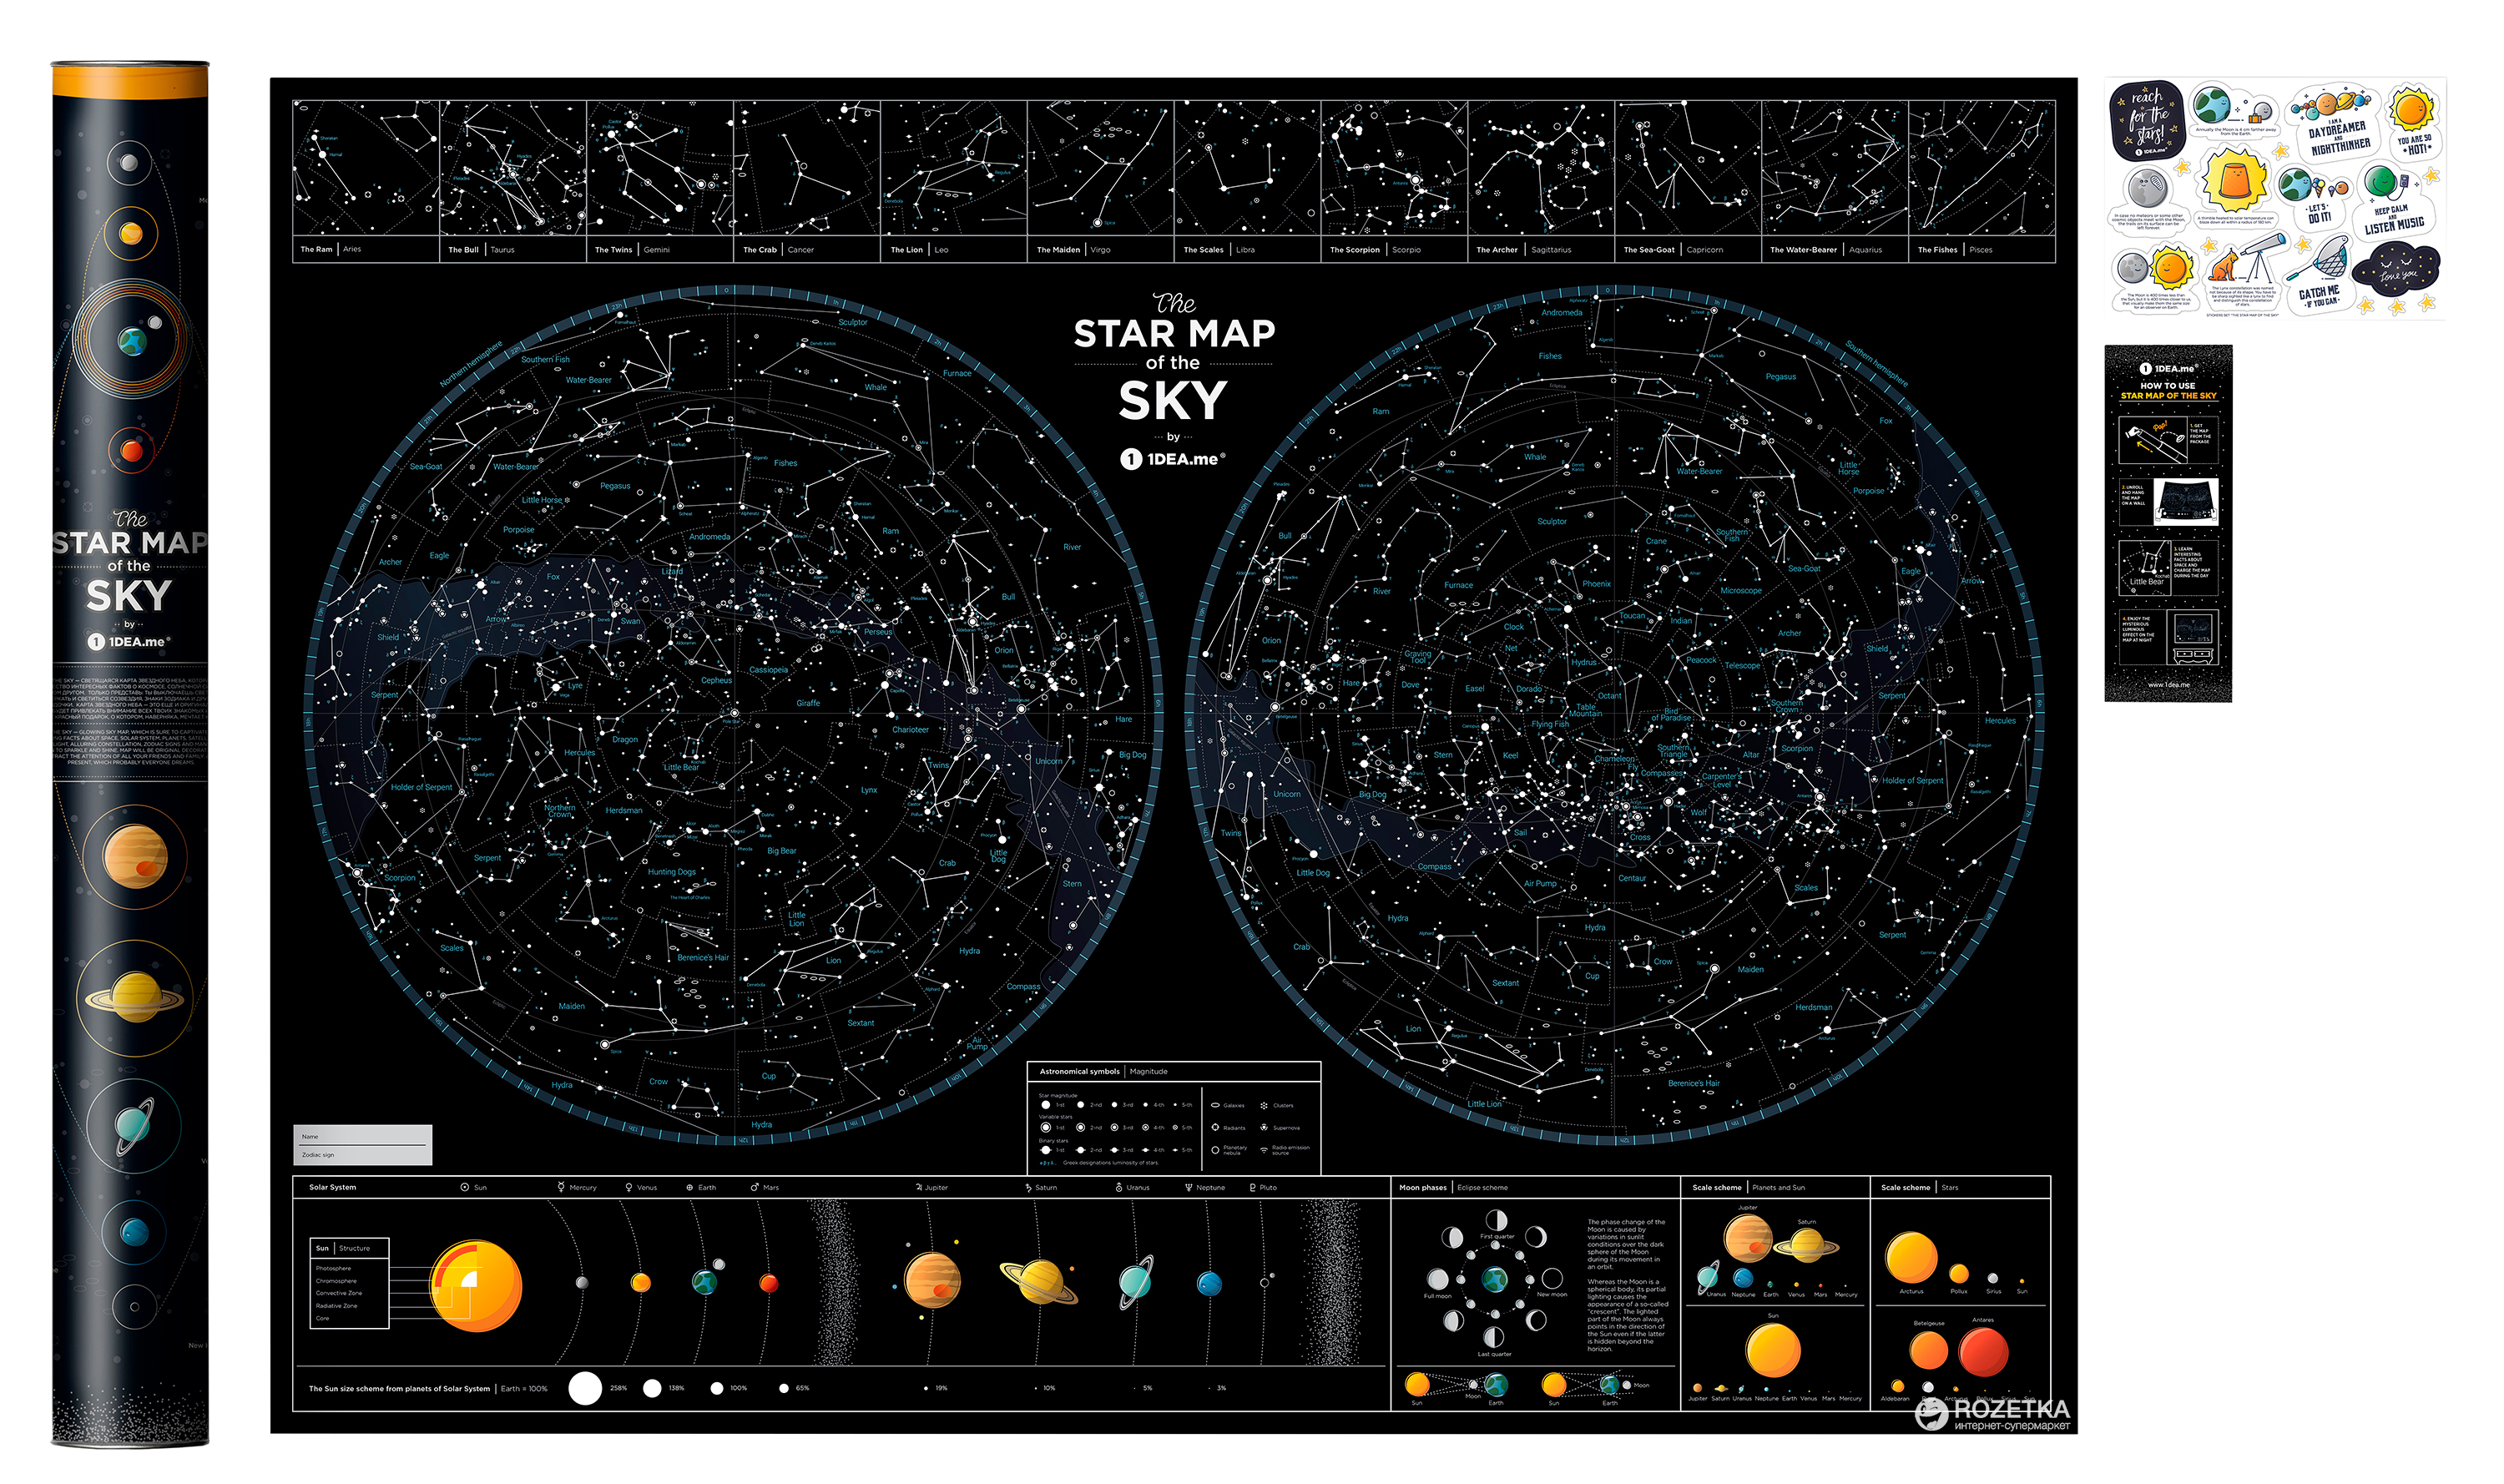 Интерактивные звездные карты. 1dea.me карта звездного неба Star Map of the Sky. Скретч карта звездного неба. Карта ночного неба. Карта зоряногоба.